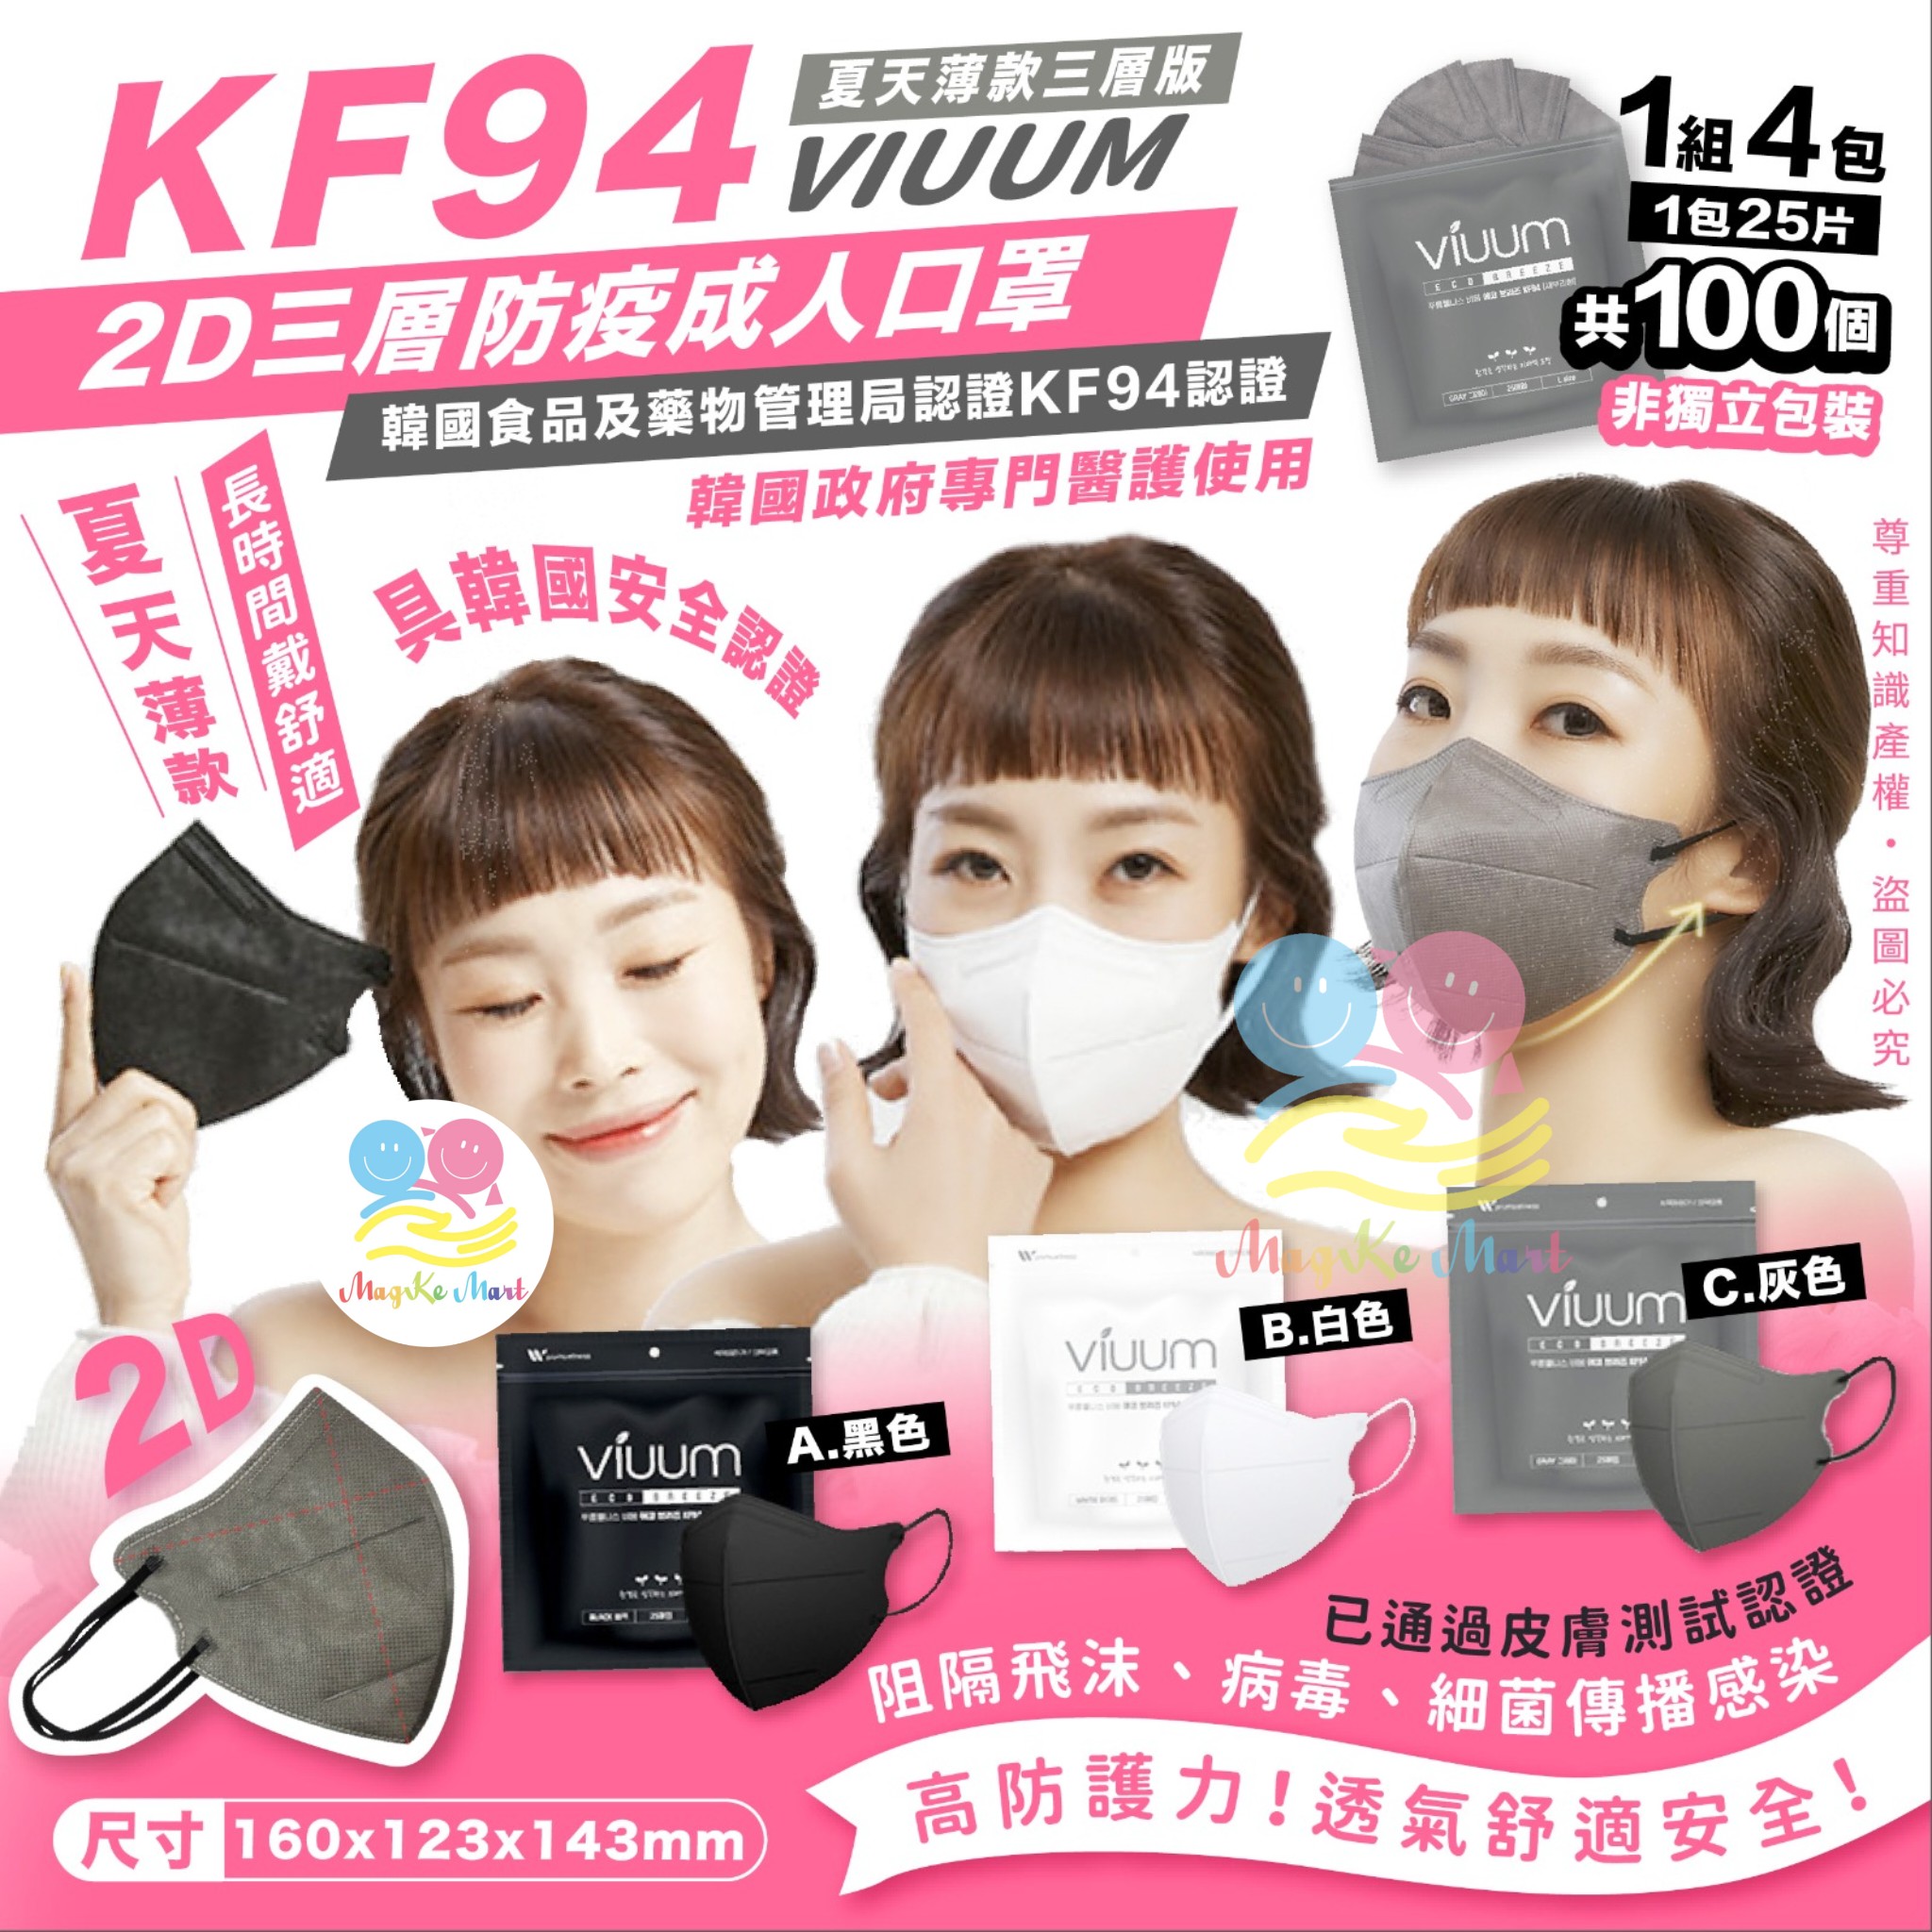 韓國 Viuum 夏天款2D三層KF94成人口罩(1套4包共100個)(非獨立包裝) (B) 白色